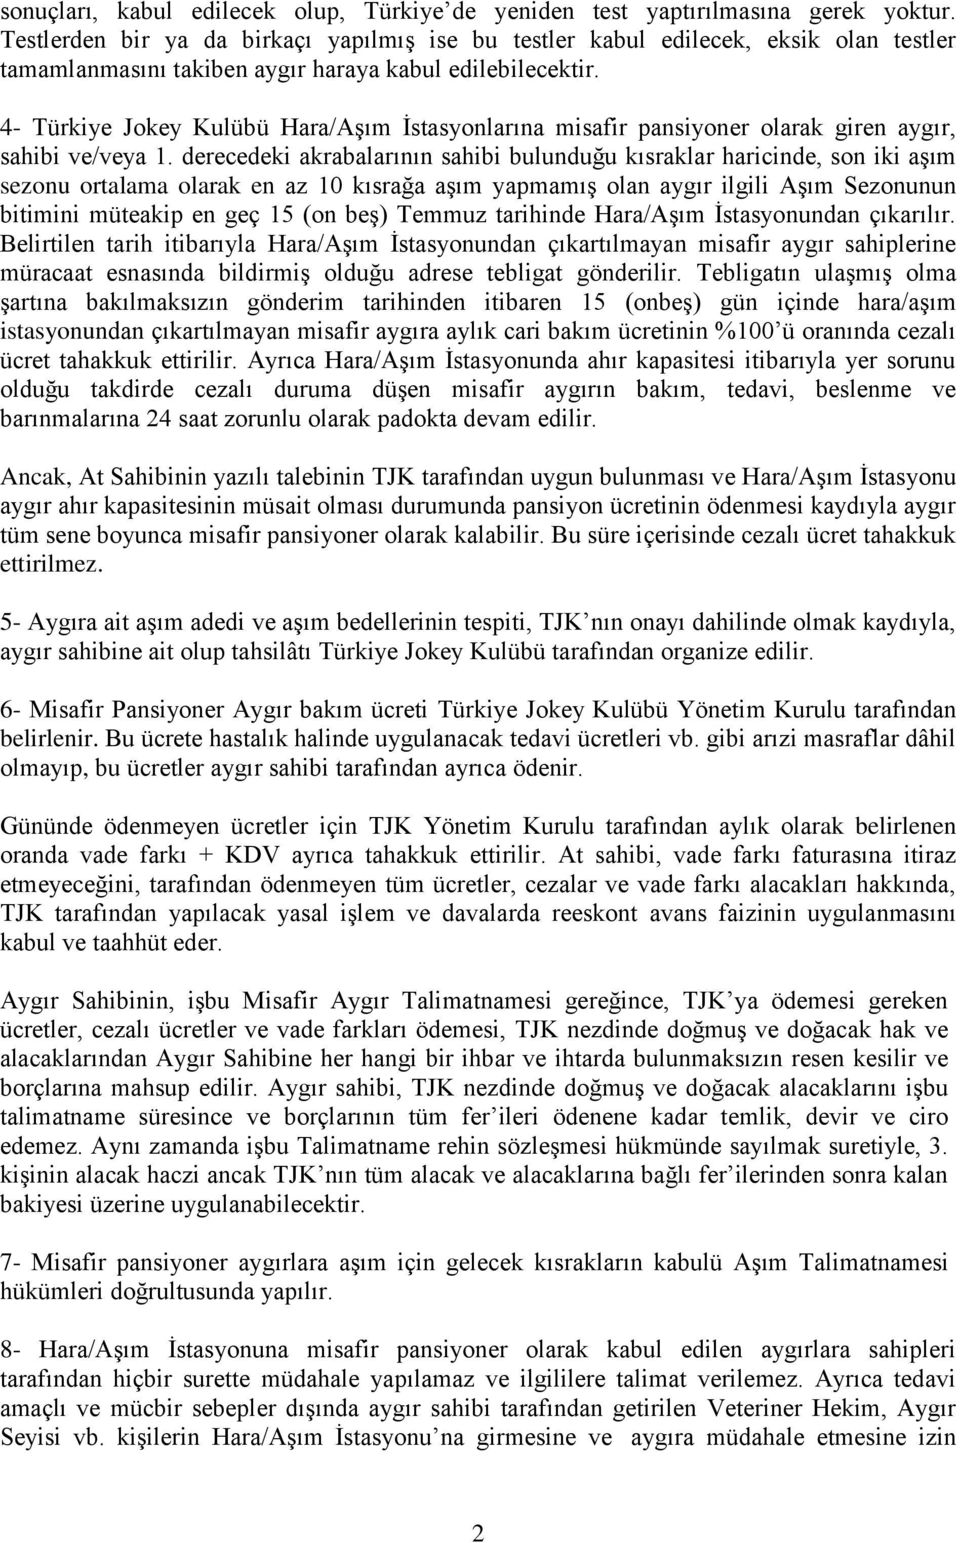 4- Türkiye Jokey Kulübü Hara/Aşım İstasyonlarına misafir pansiyoner olarak giren aygır, sahibi ve/veya 1.